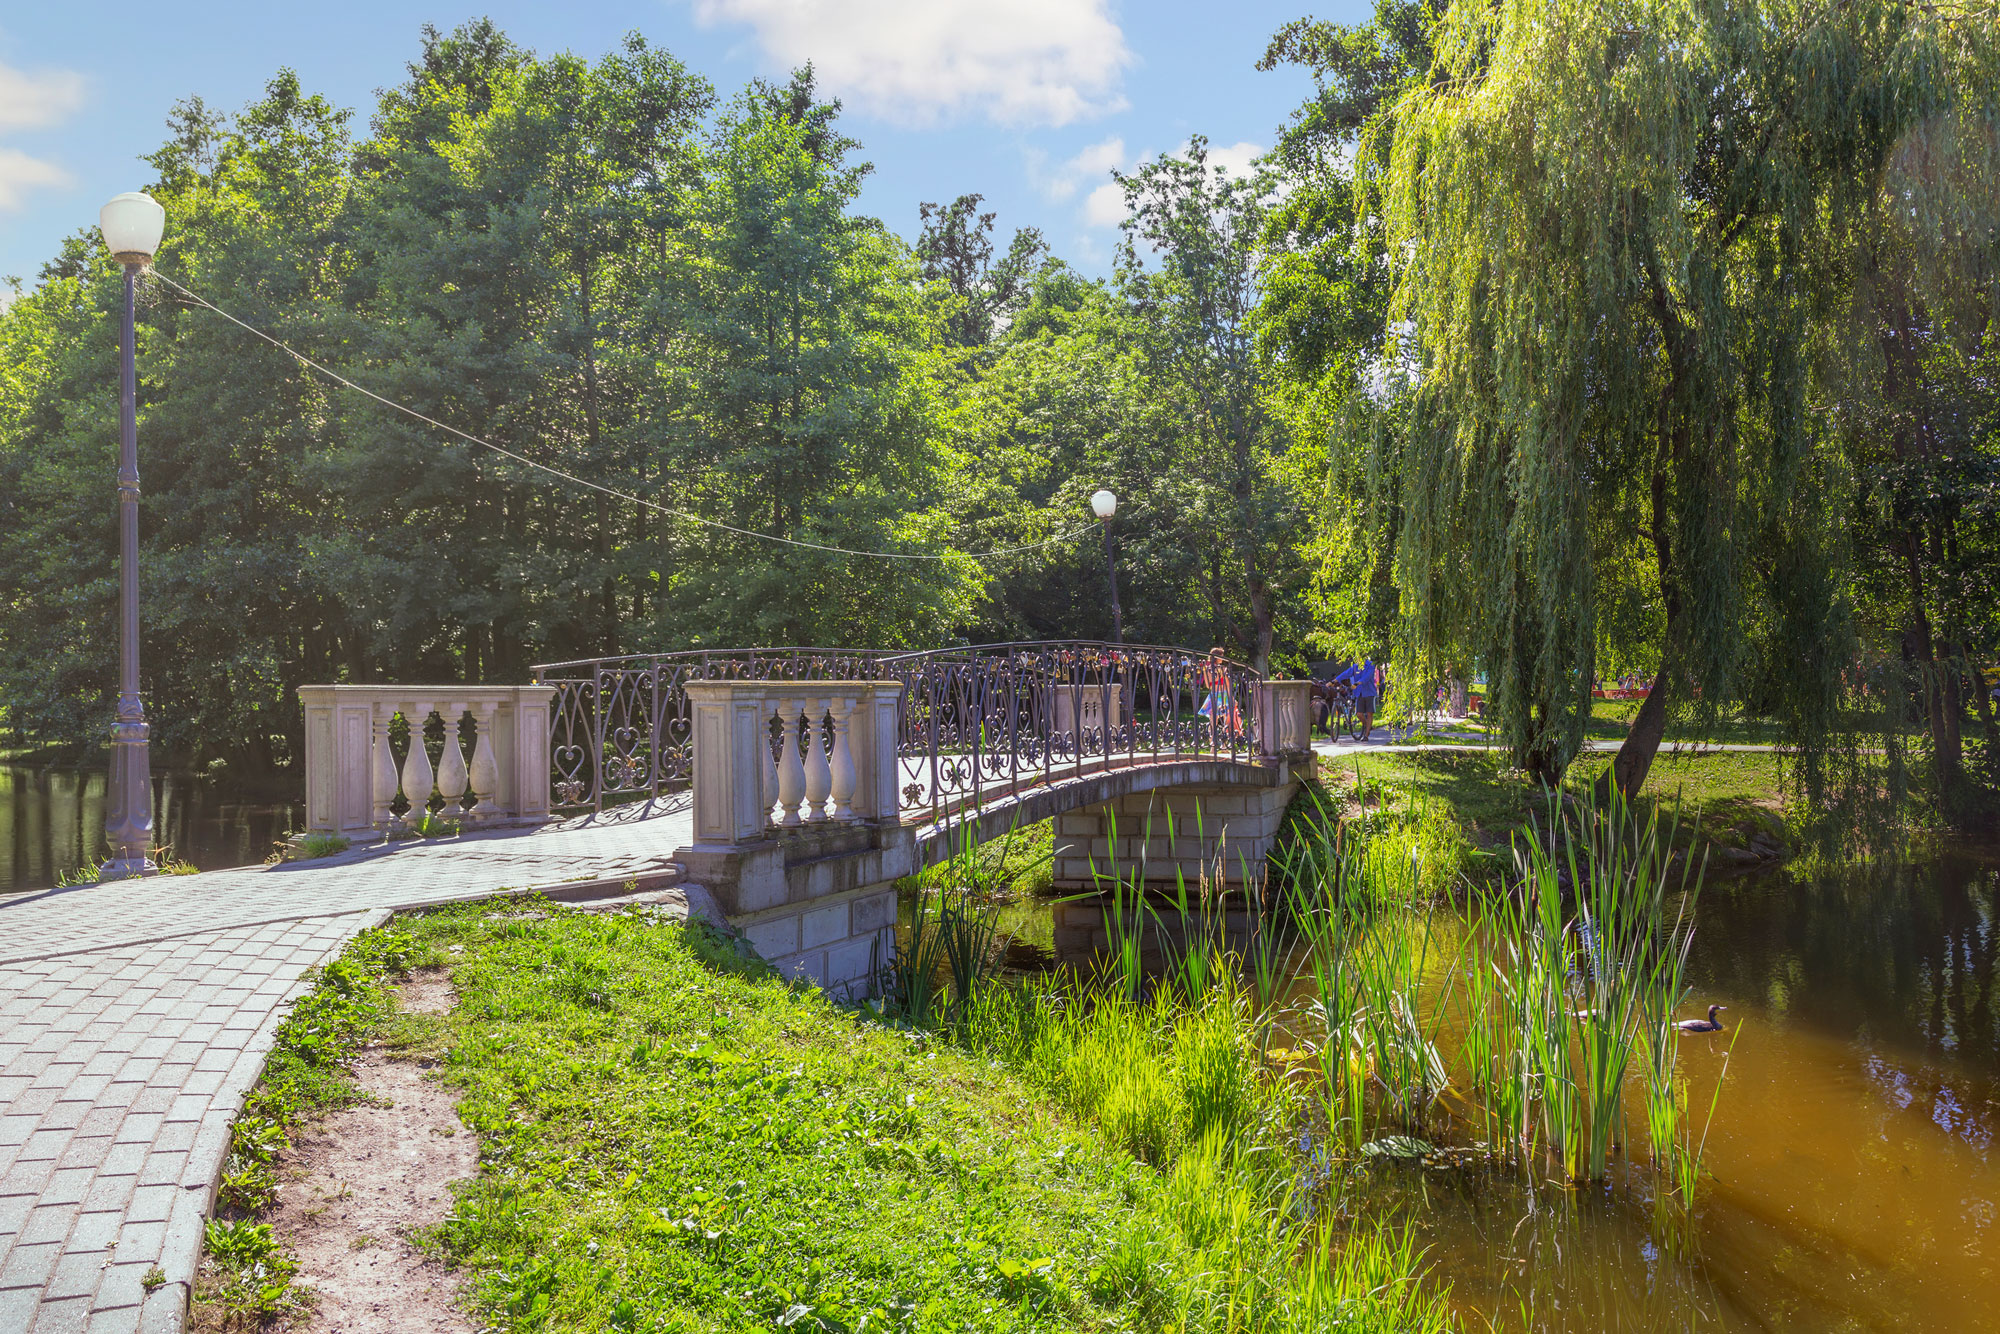 На территории есть красивые мостики. Фото: Belikart / Shutterstock